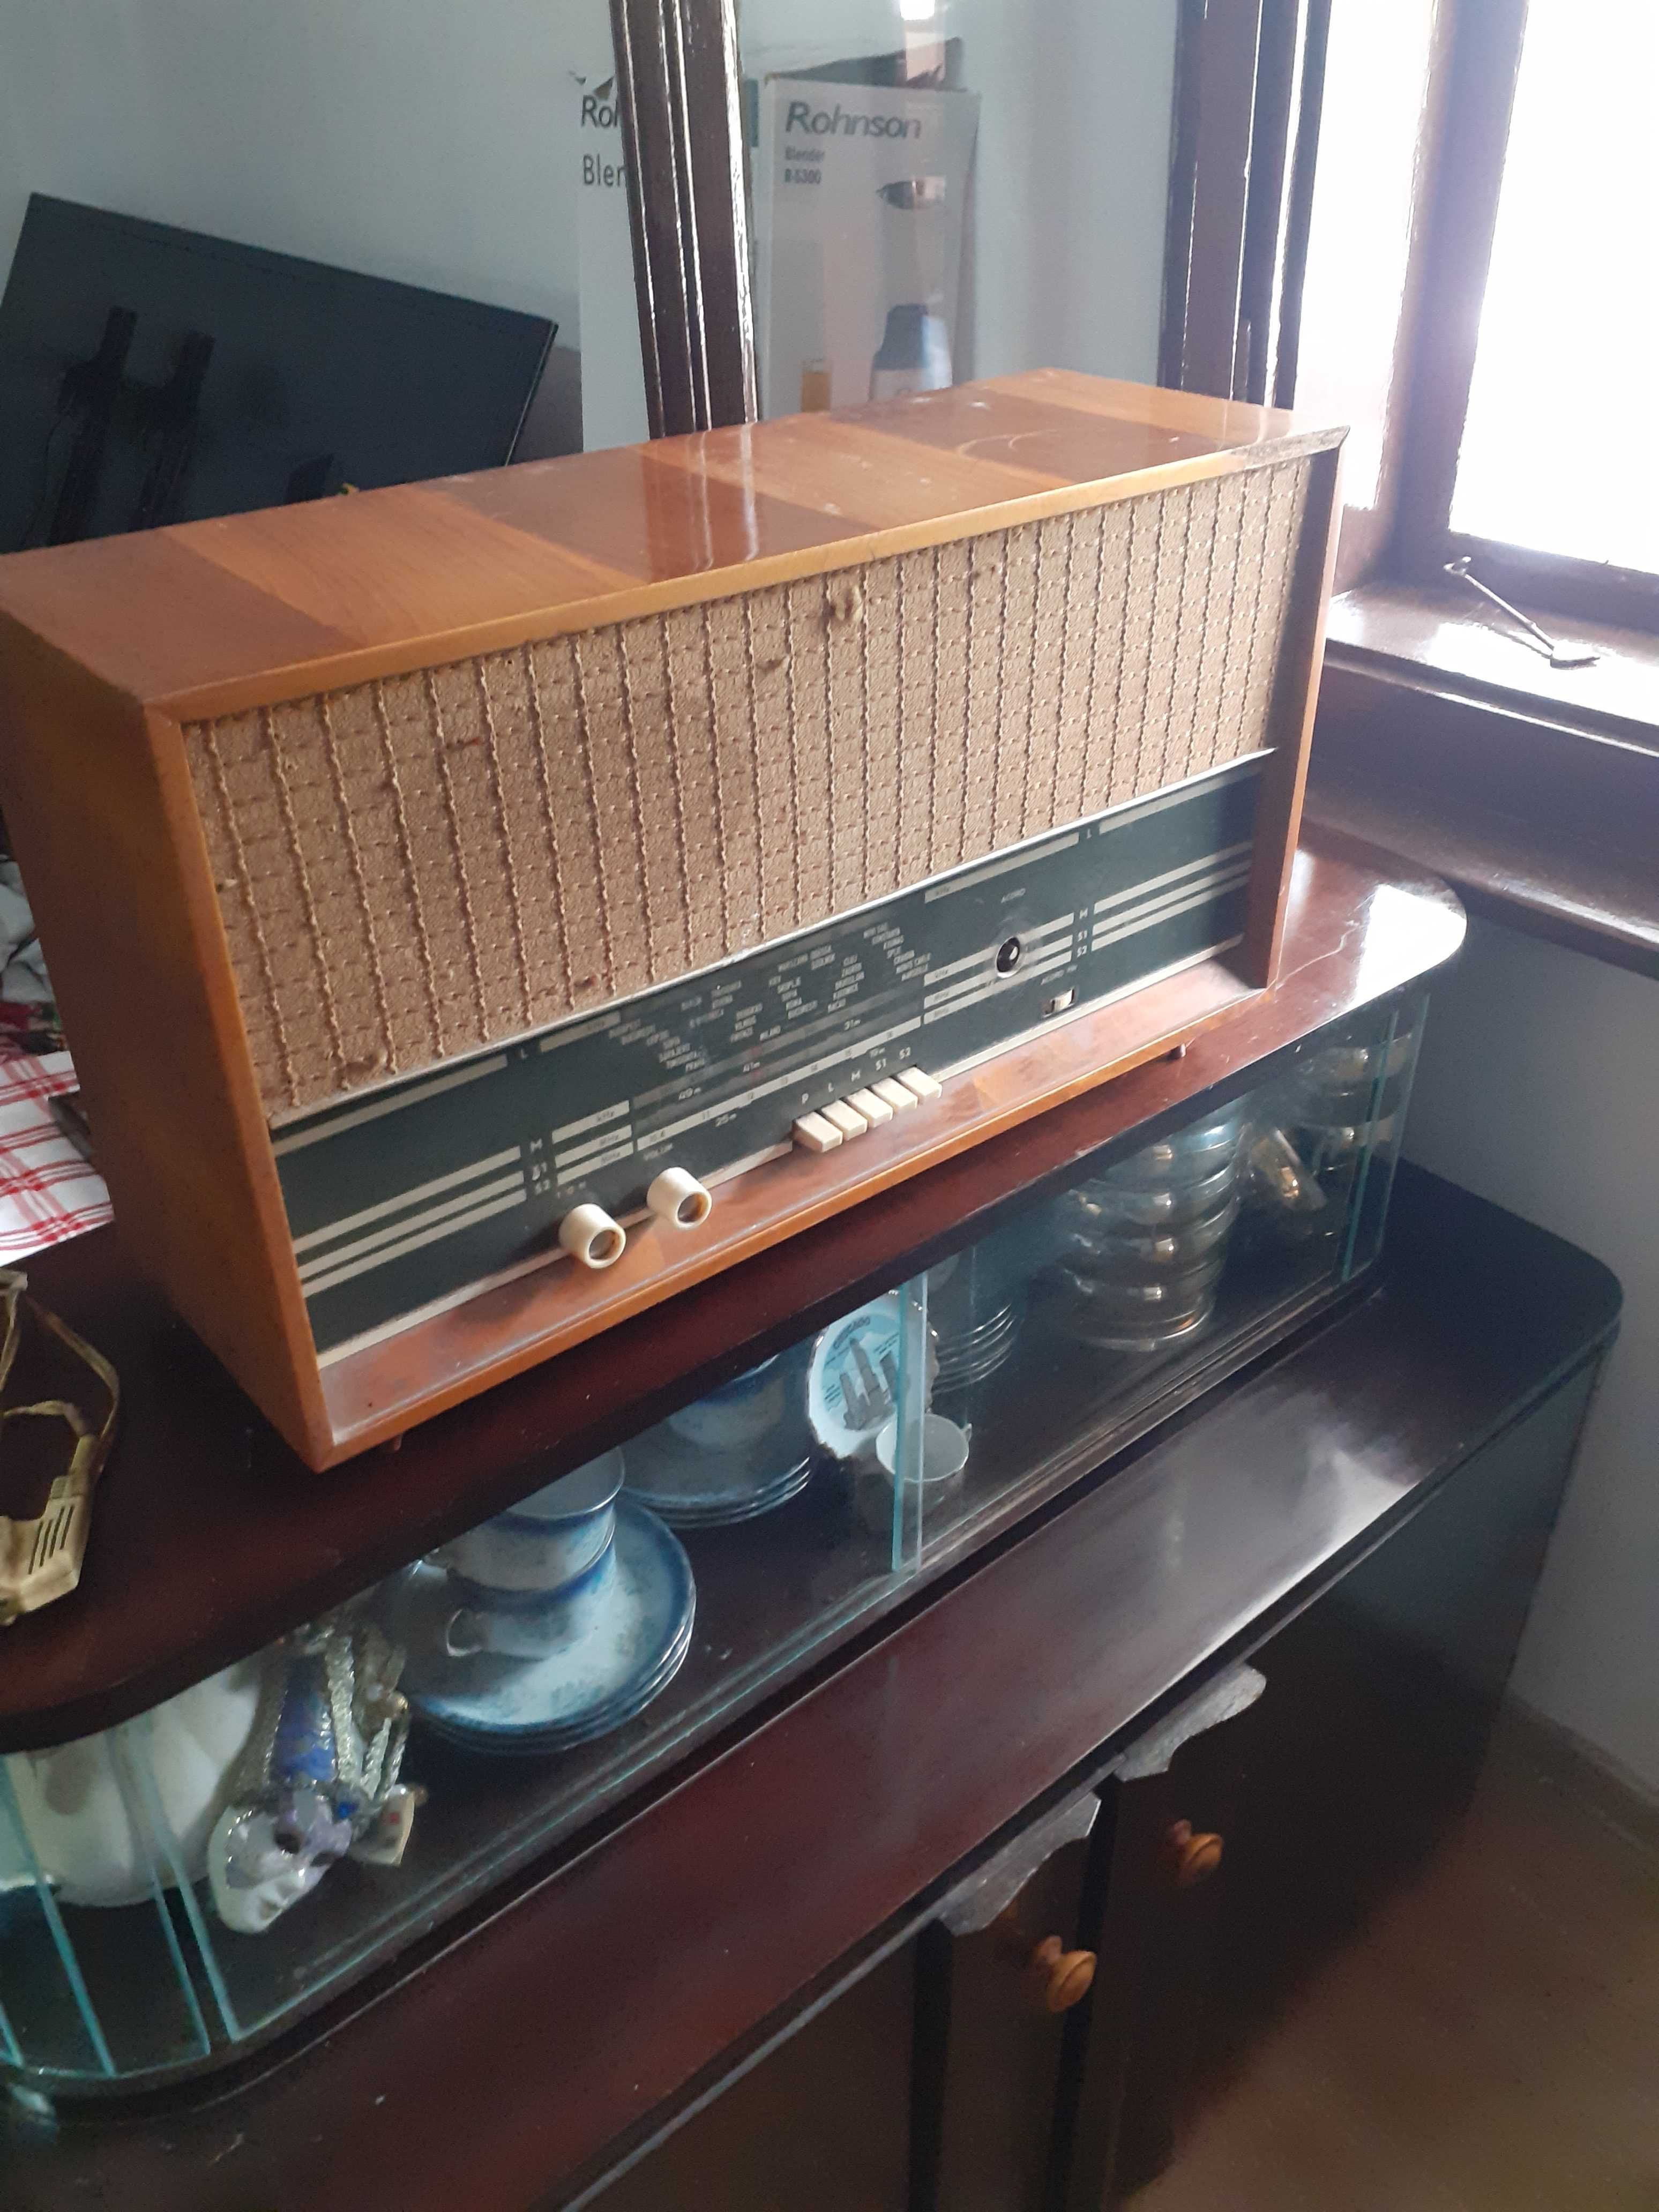 Vand radio vechi